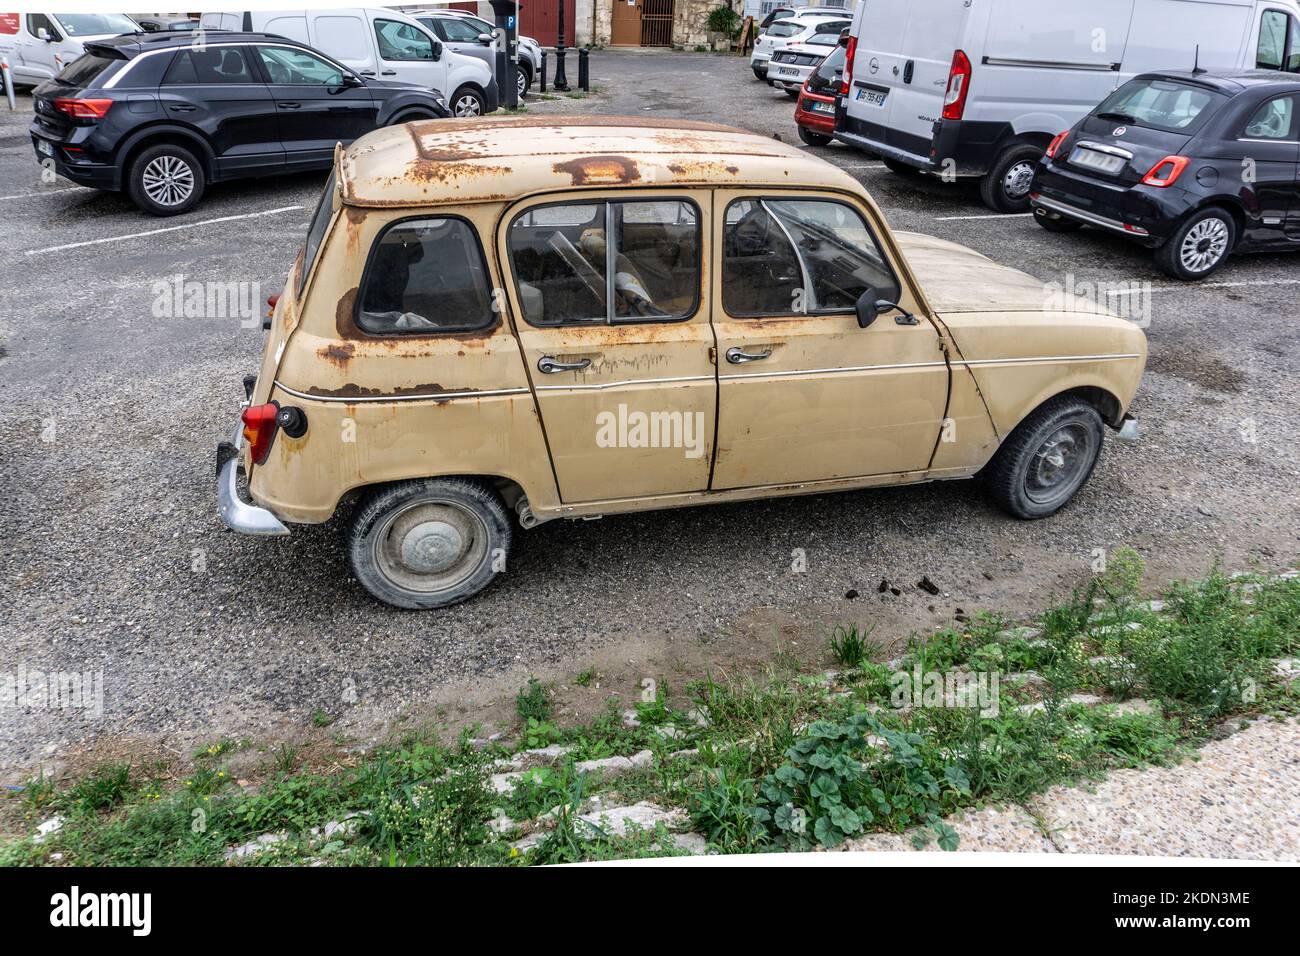 Ein alter rostiger Renault 4, der glücklichere Tage erlebt hat. Stockfoto